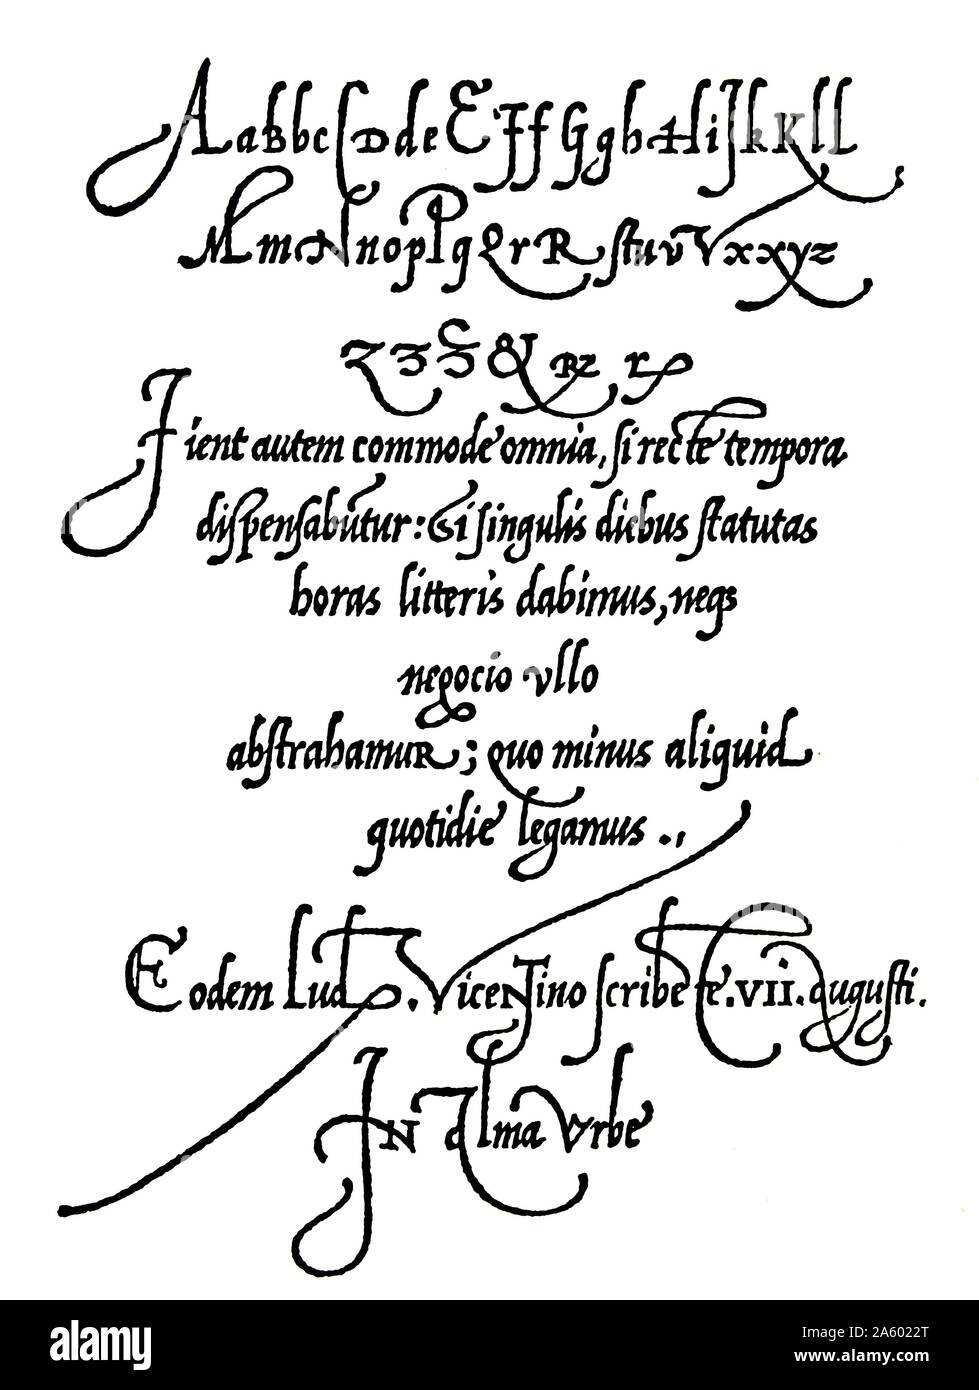 Pagina da Arrighi Operina della scrittura manuale del 1539 che mostra gli stili di scrittura del XVI secolo, inizi del rinascimento. Foto Stock